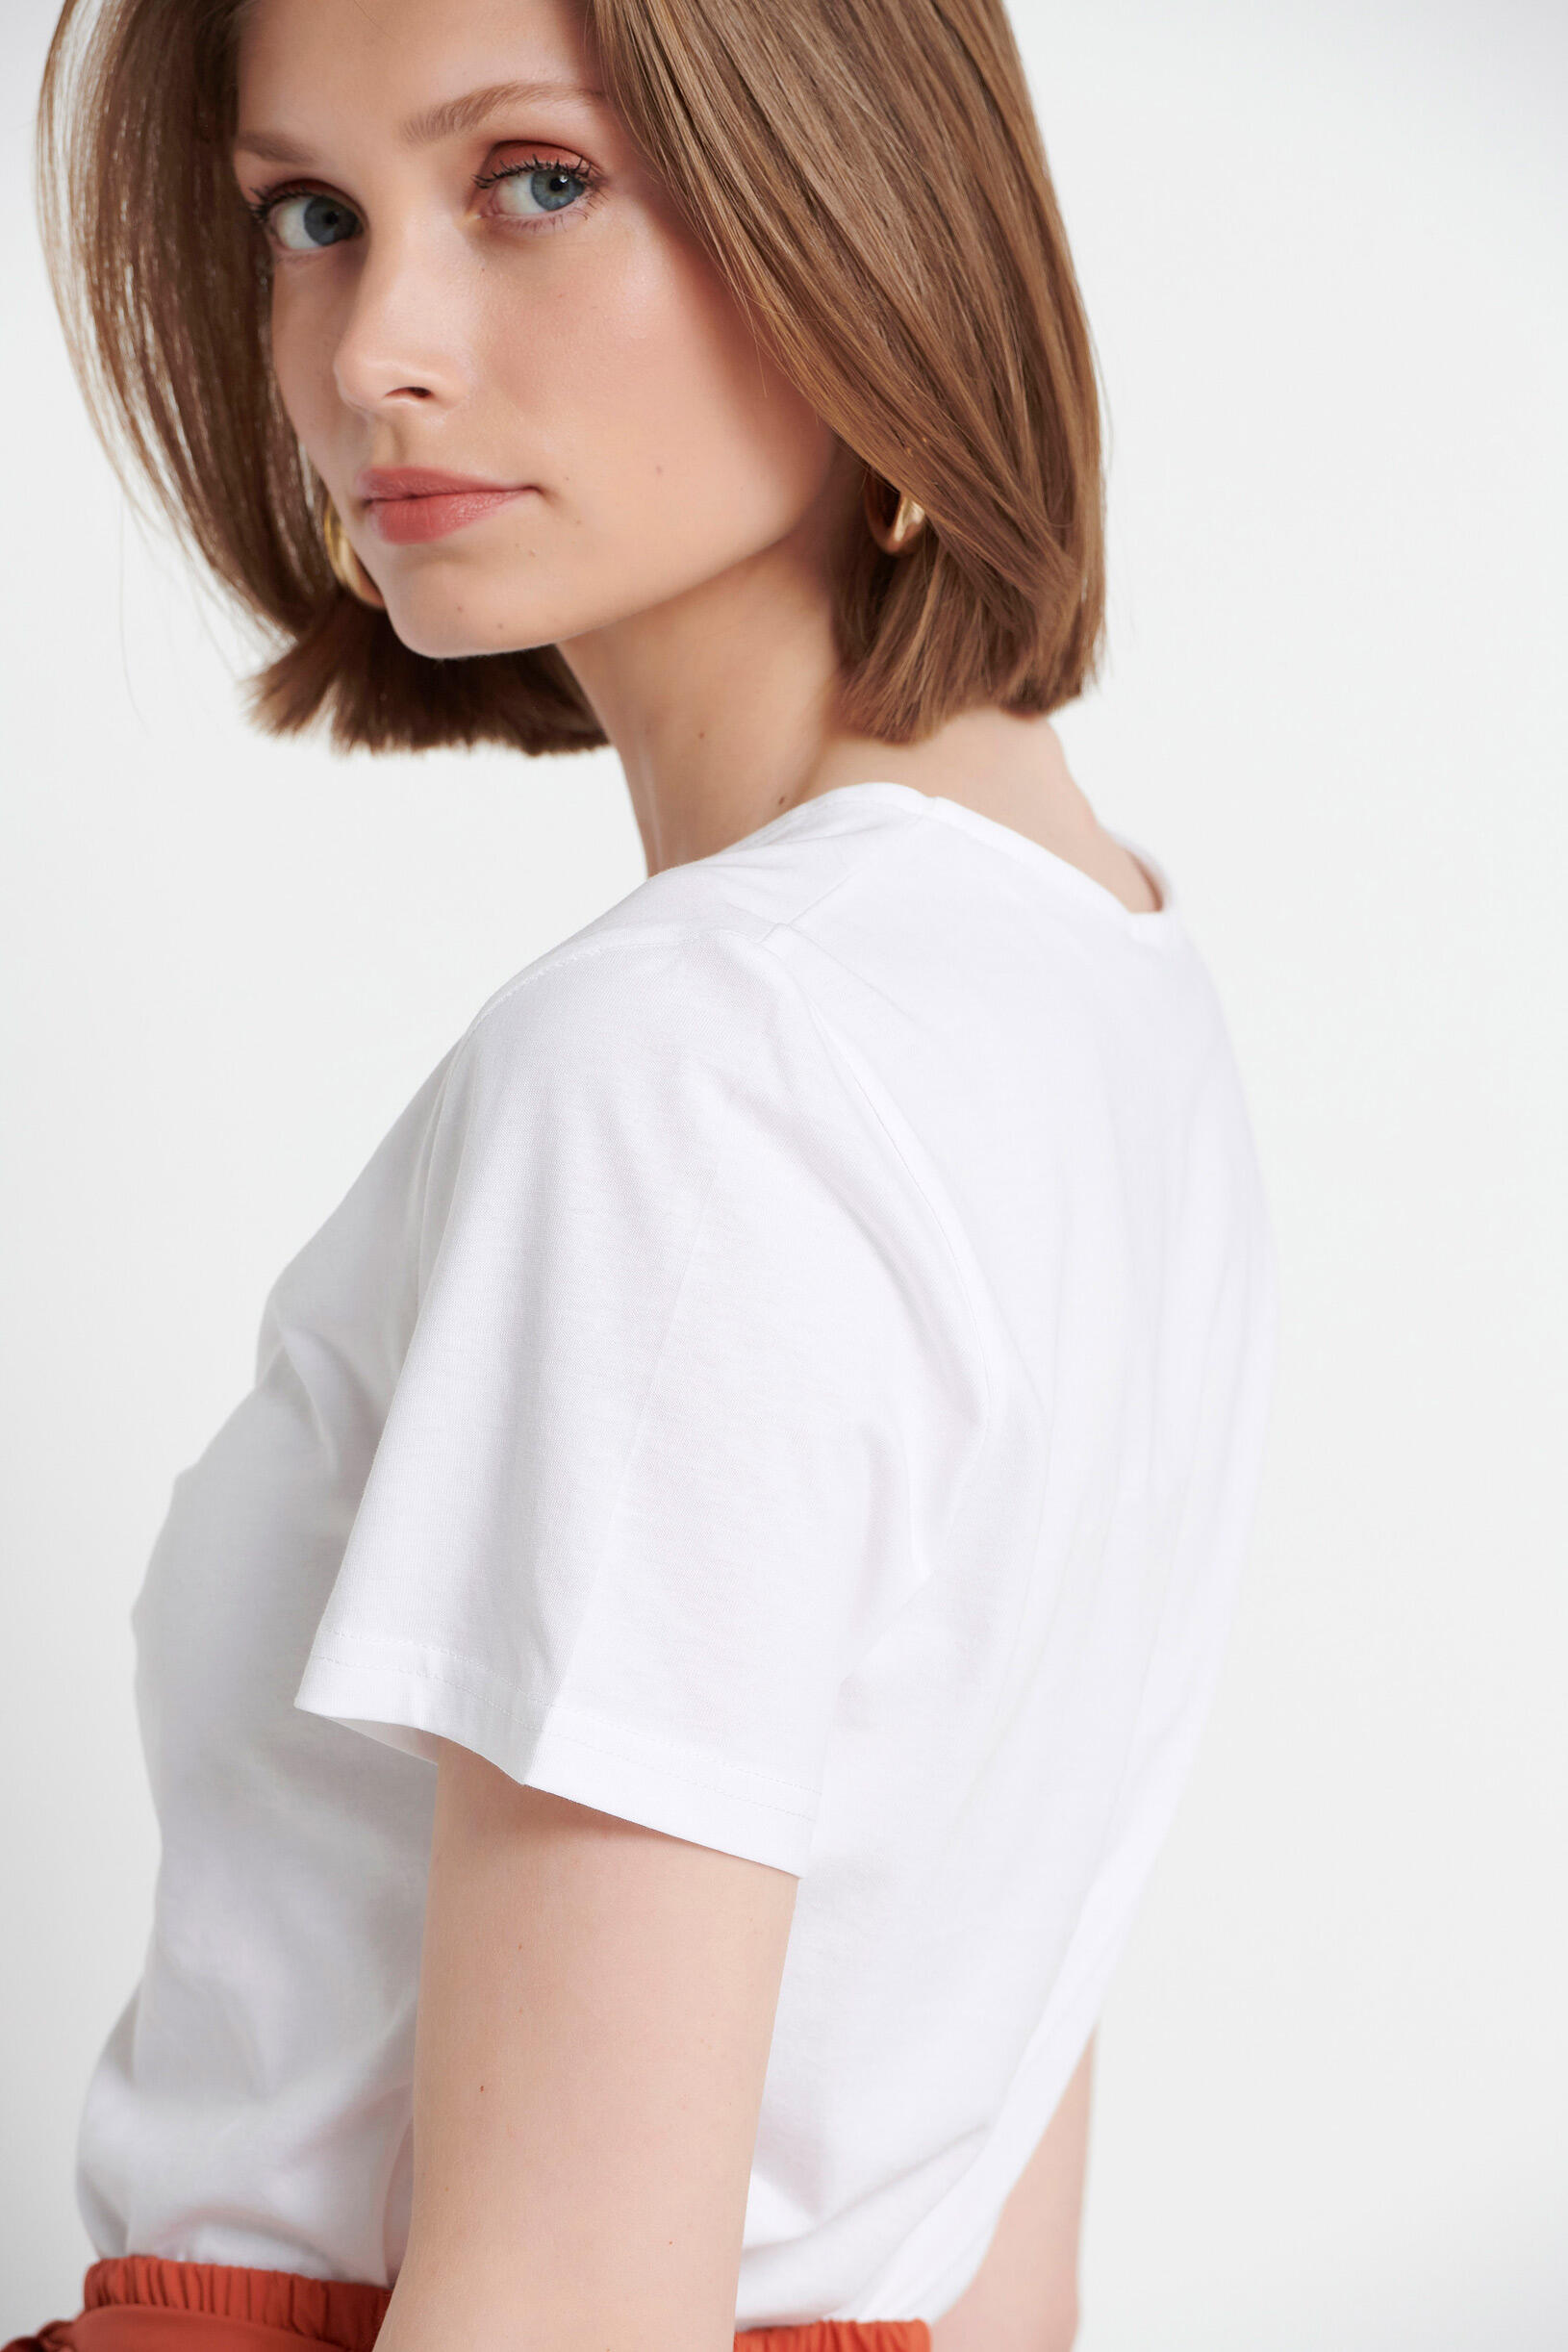 Μπλούζα με κόμπο μπροστά | Γυναικεία Ρούχα Bill Cost